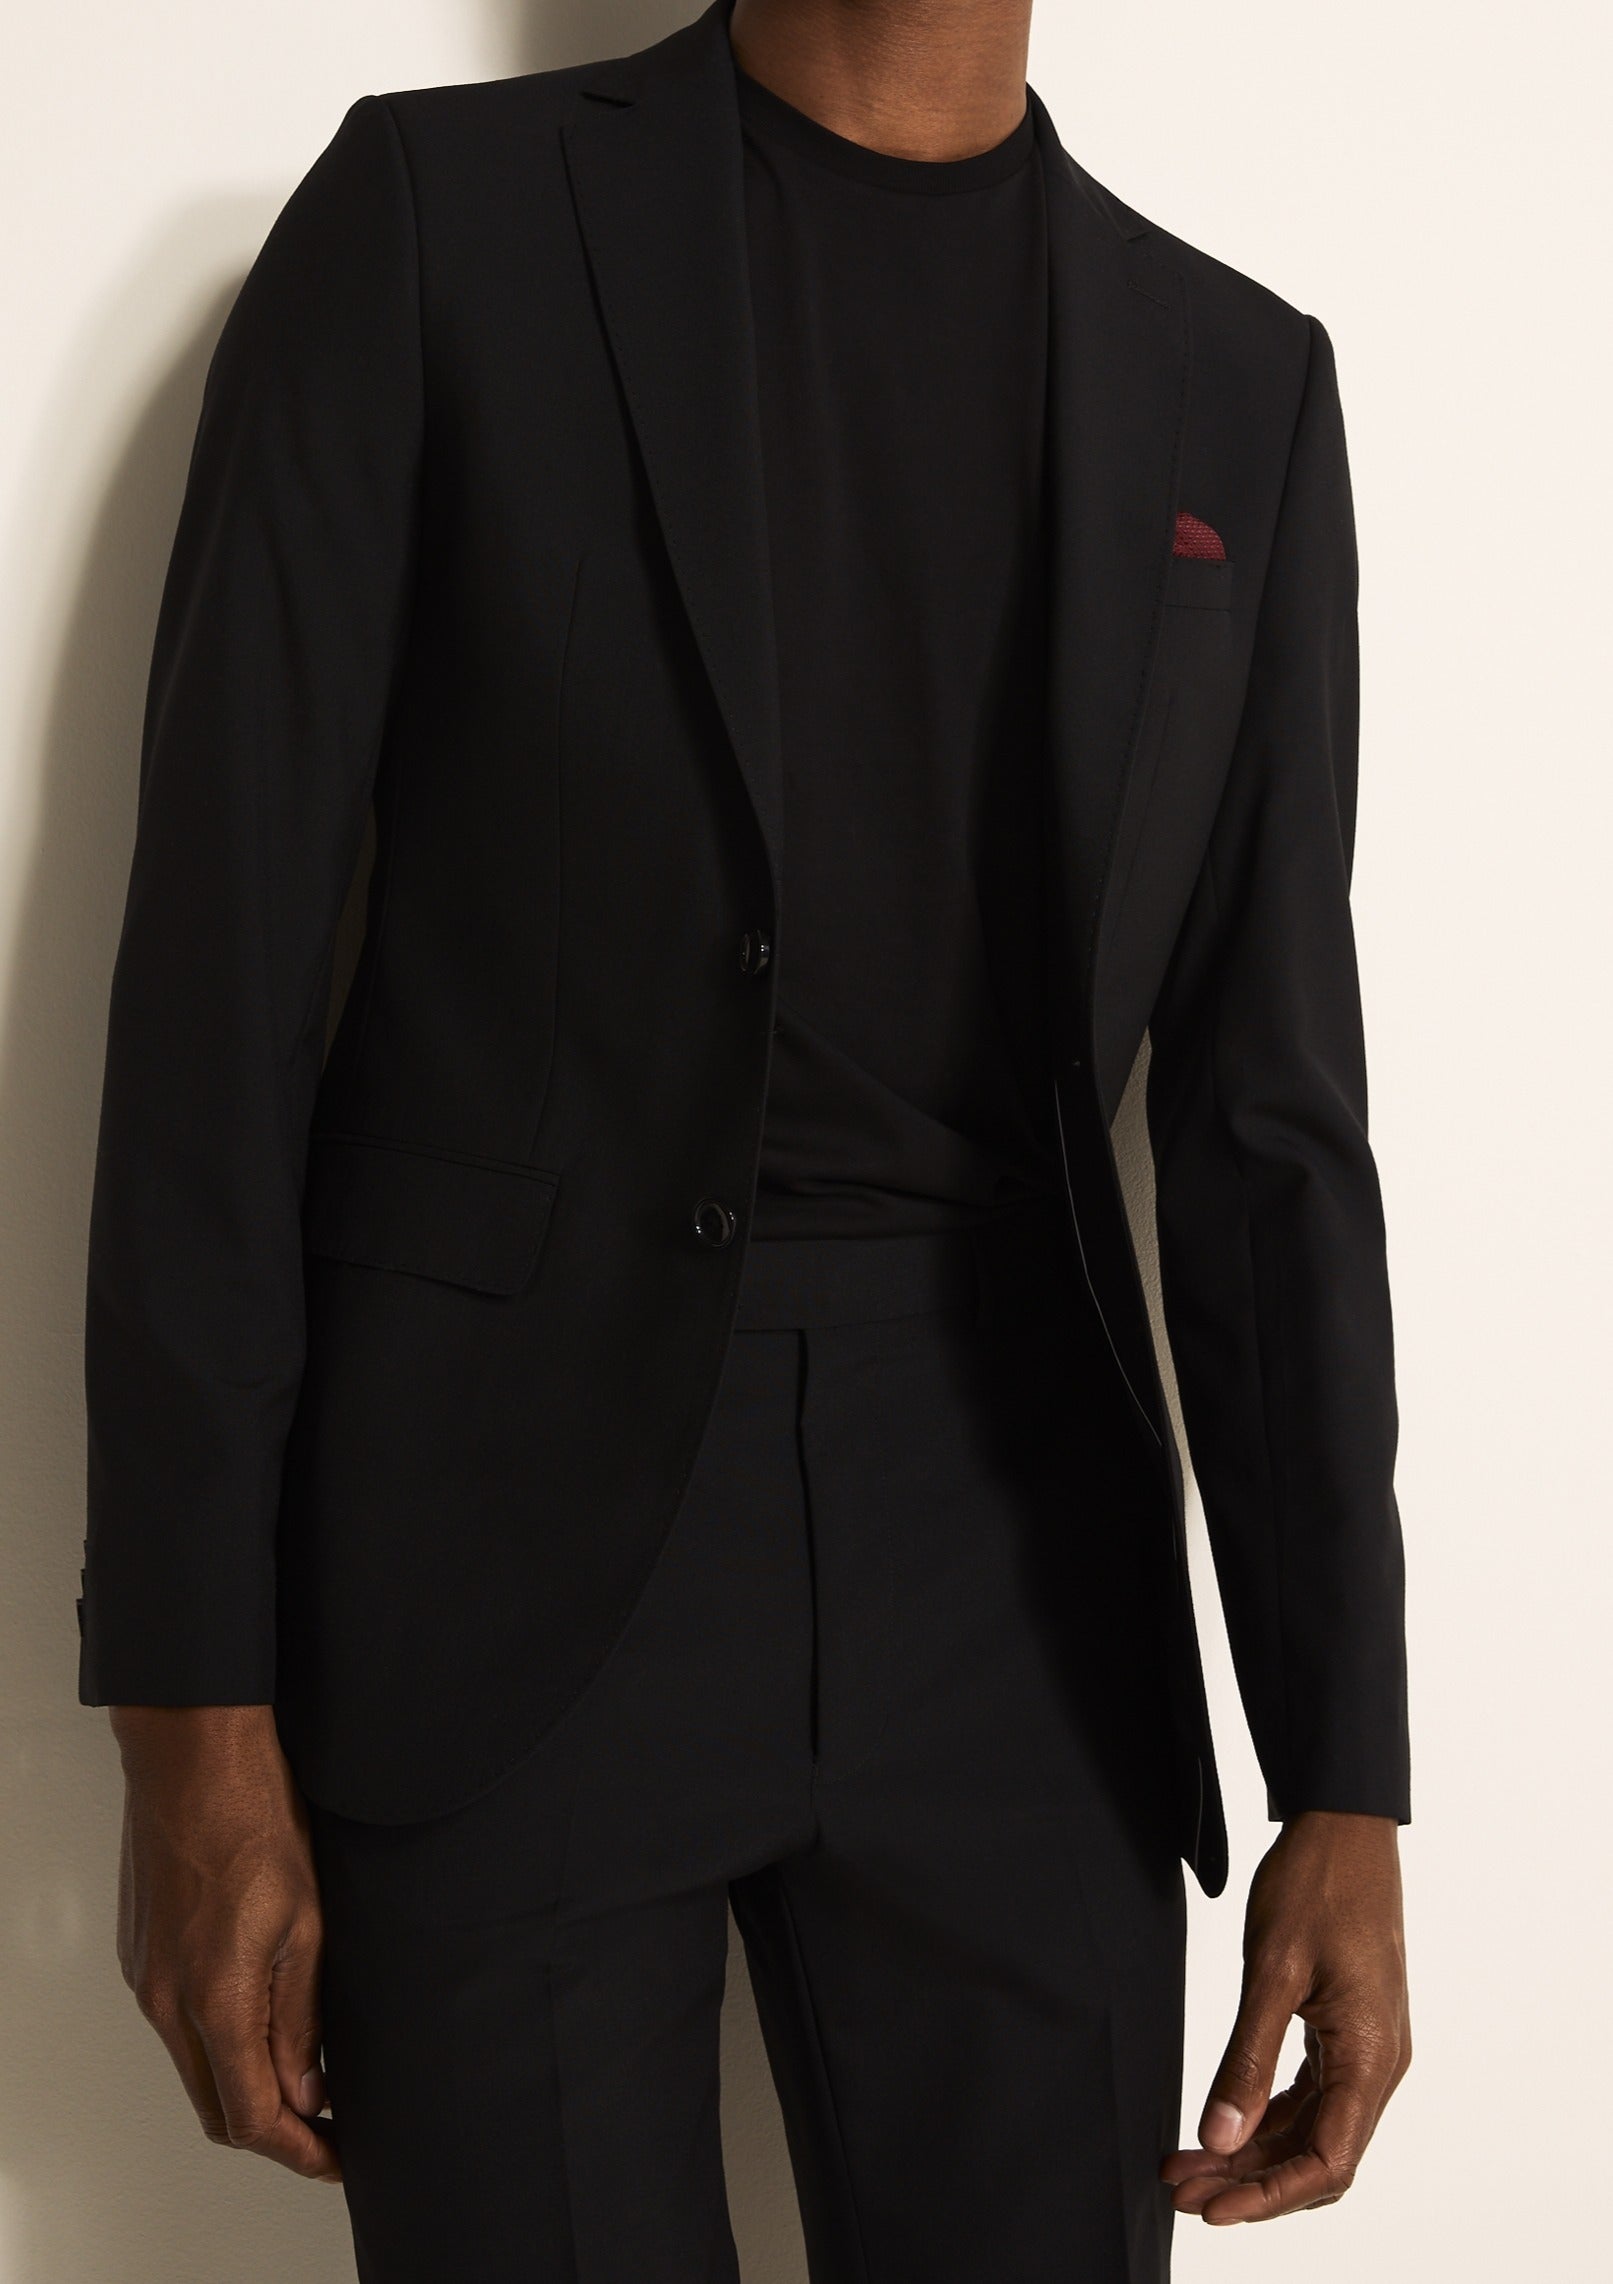 Mens fashion | Black suit men, Mens fashion suits, All black suit